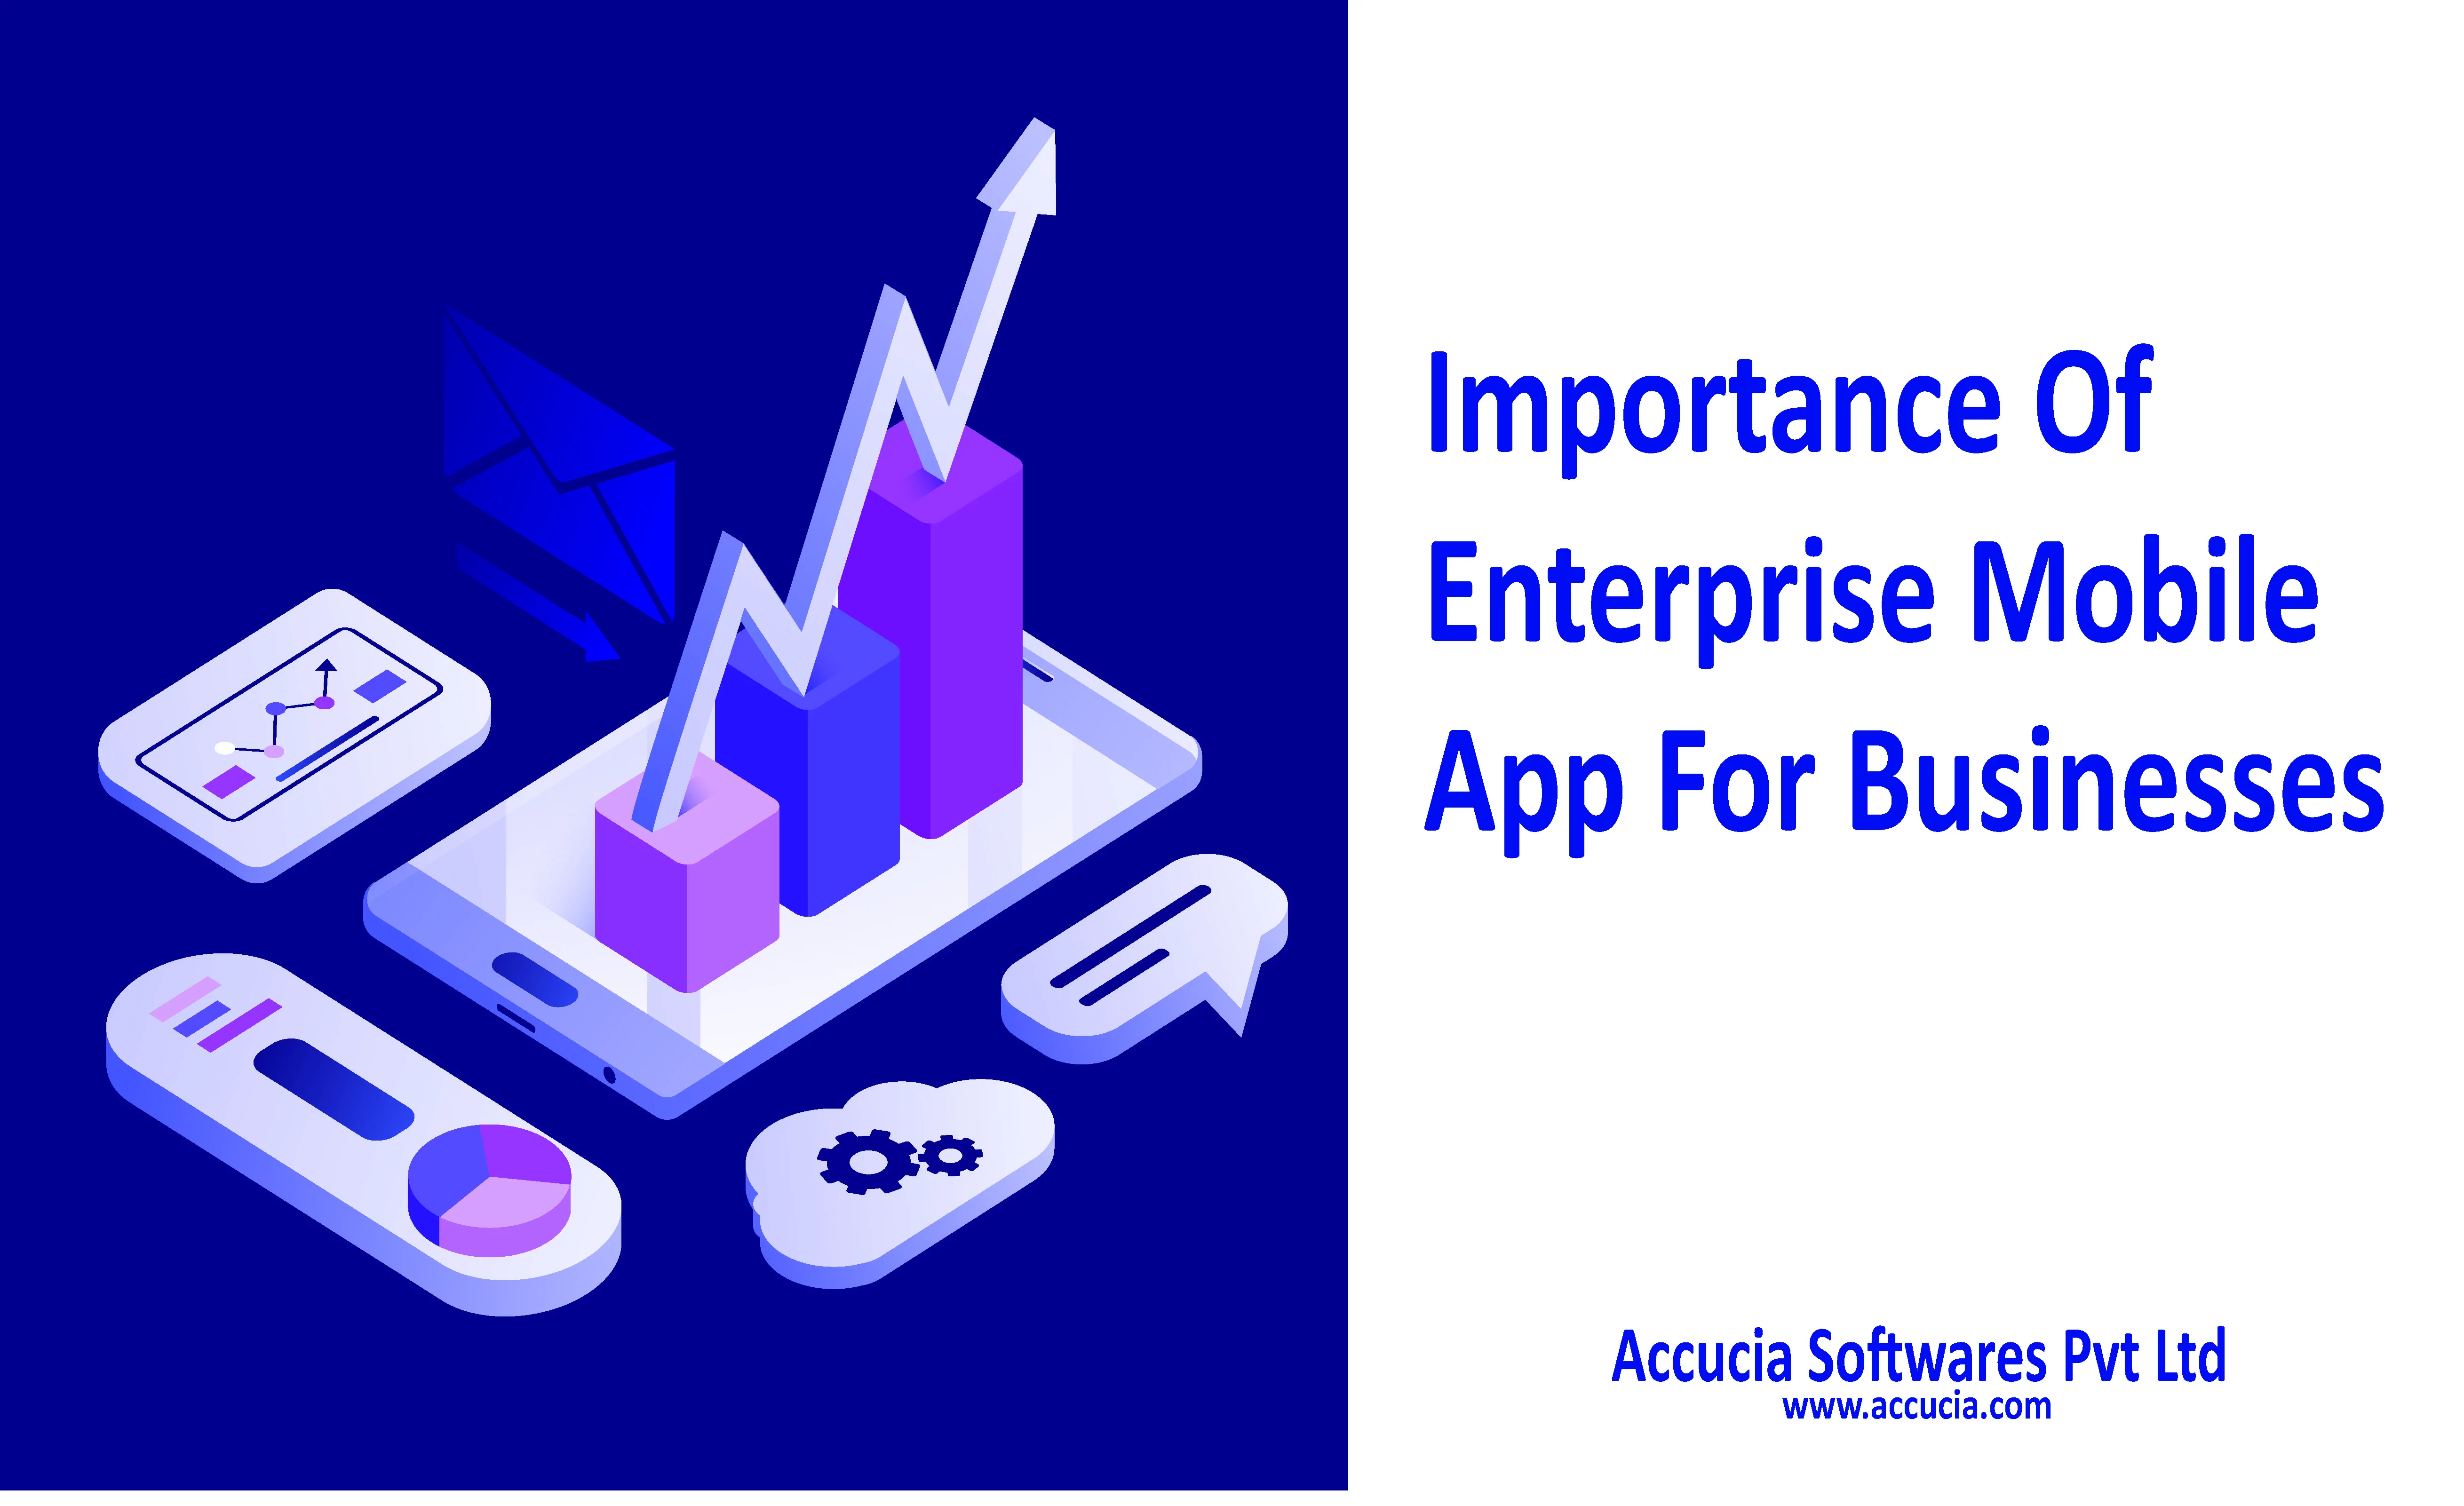 Enterprise Mobile App Accucia Softwares